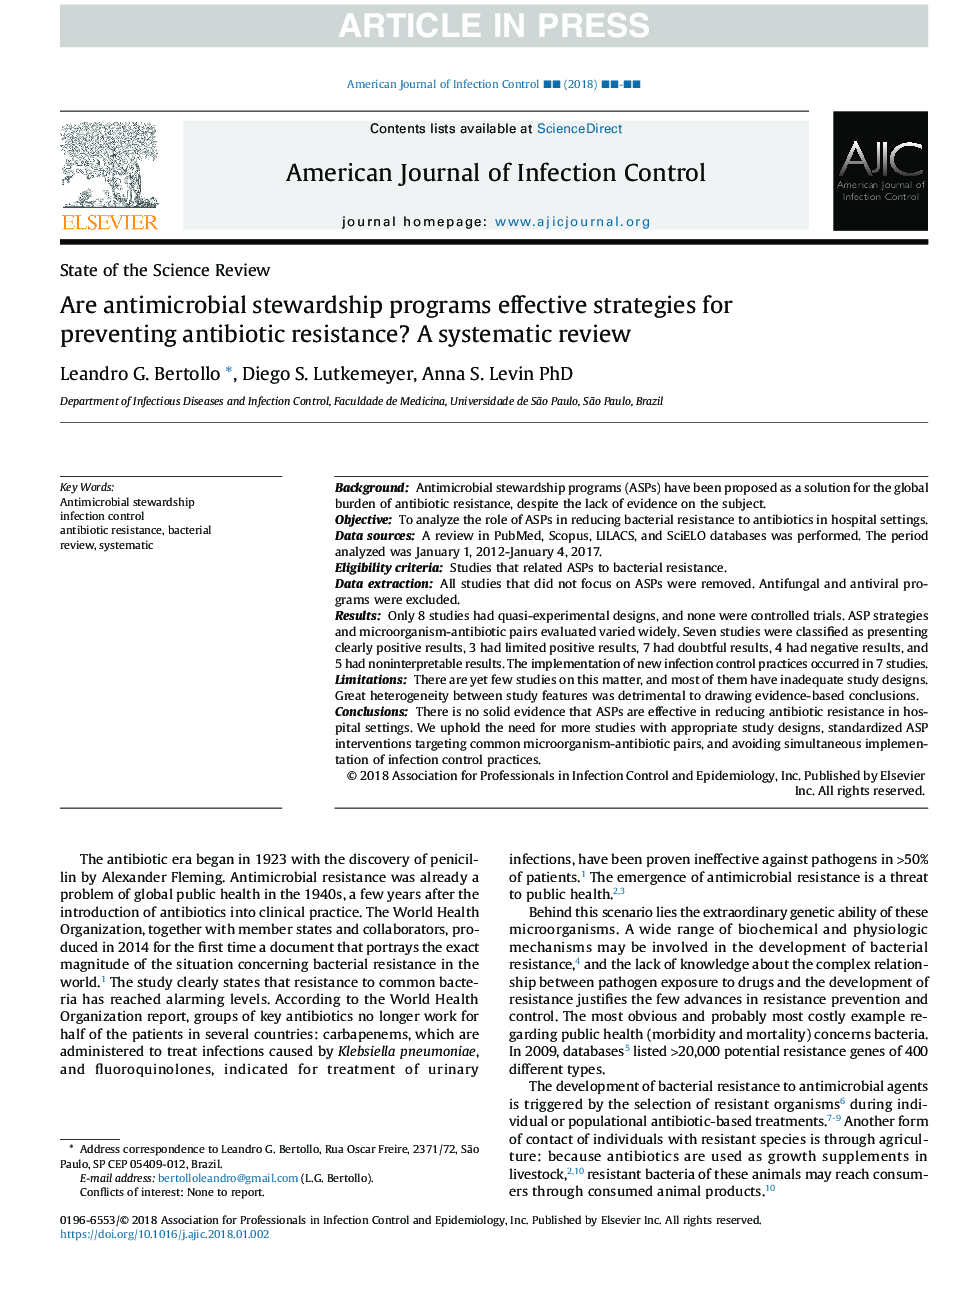 آیا برنامه های نگهداری ضد میکروبی برای جلوگیری از مقاومت آنتی بیوتیکی موثر است؟ بررسی سیستماتیک 